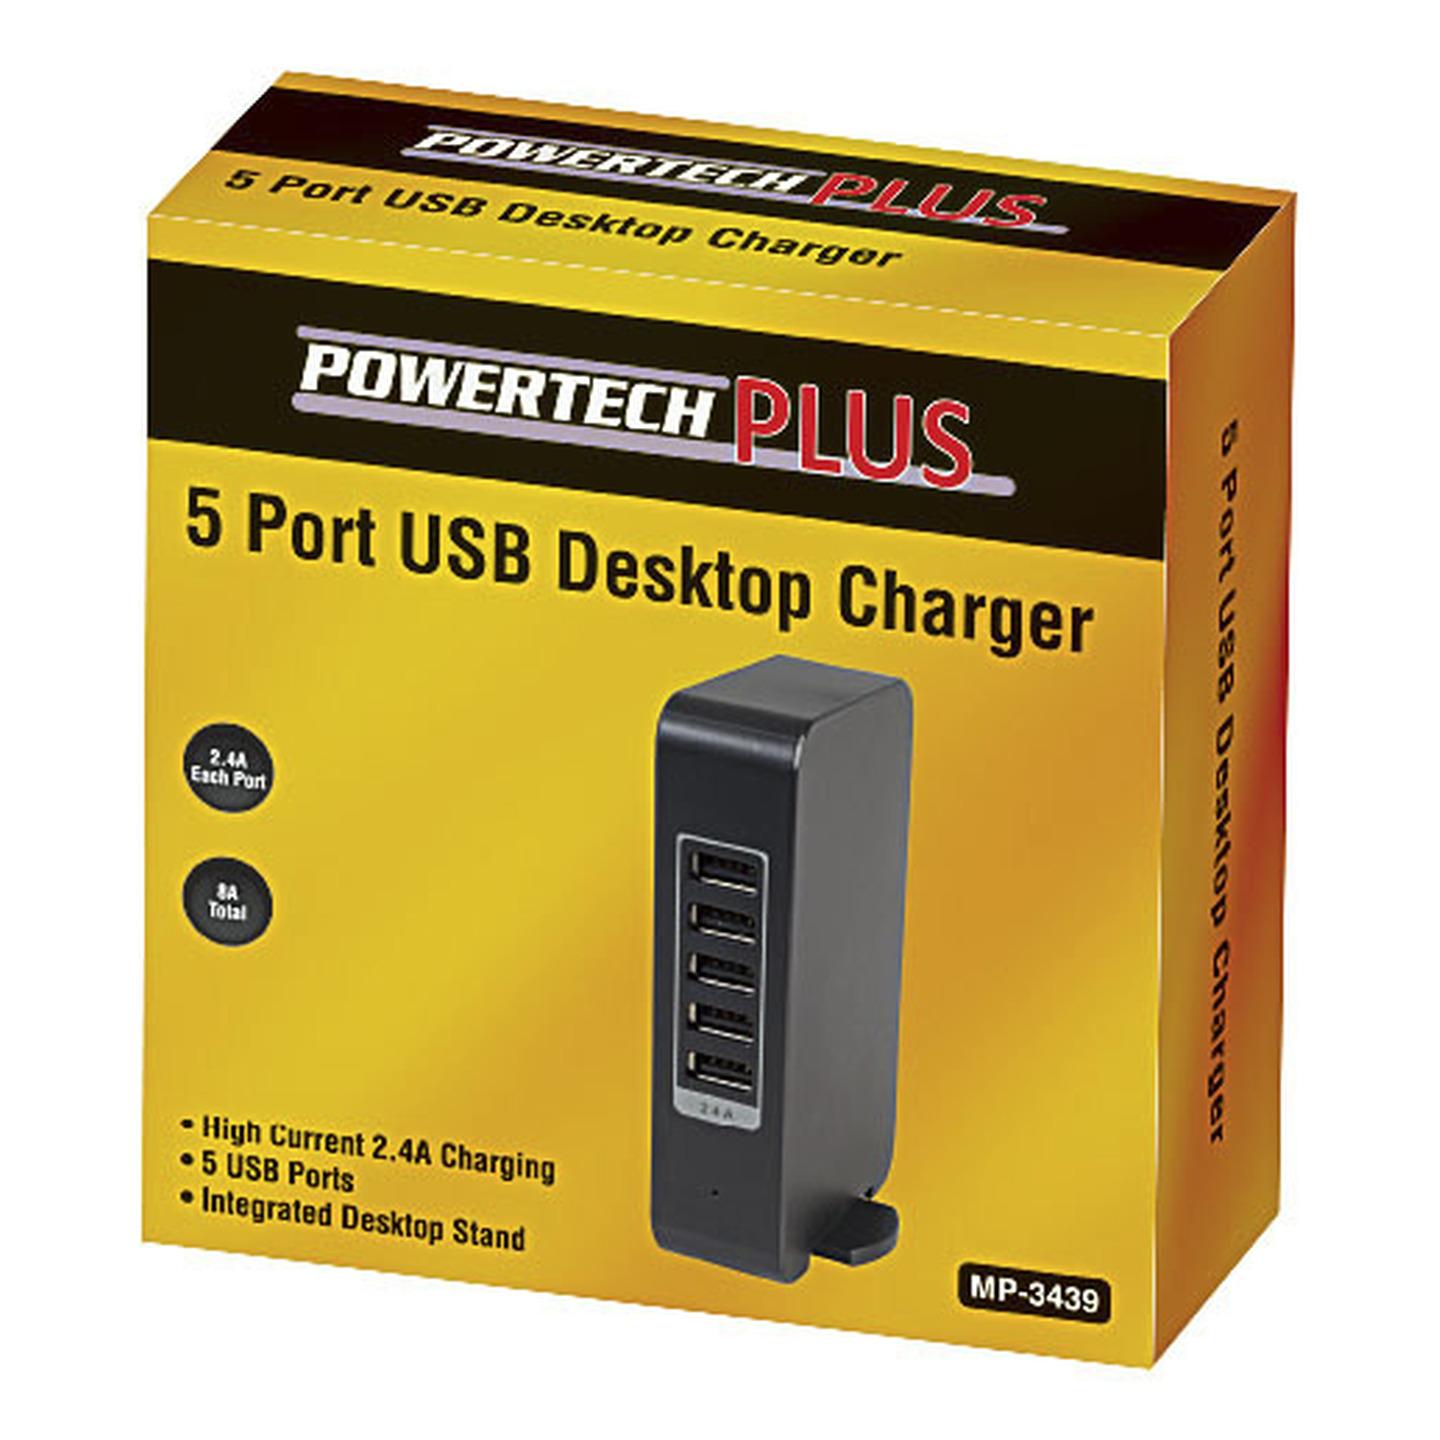 5 Port USB Desktop Charger